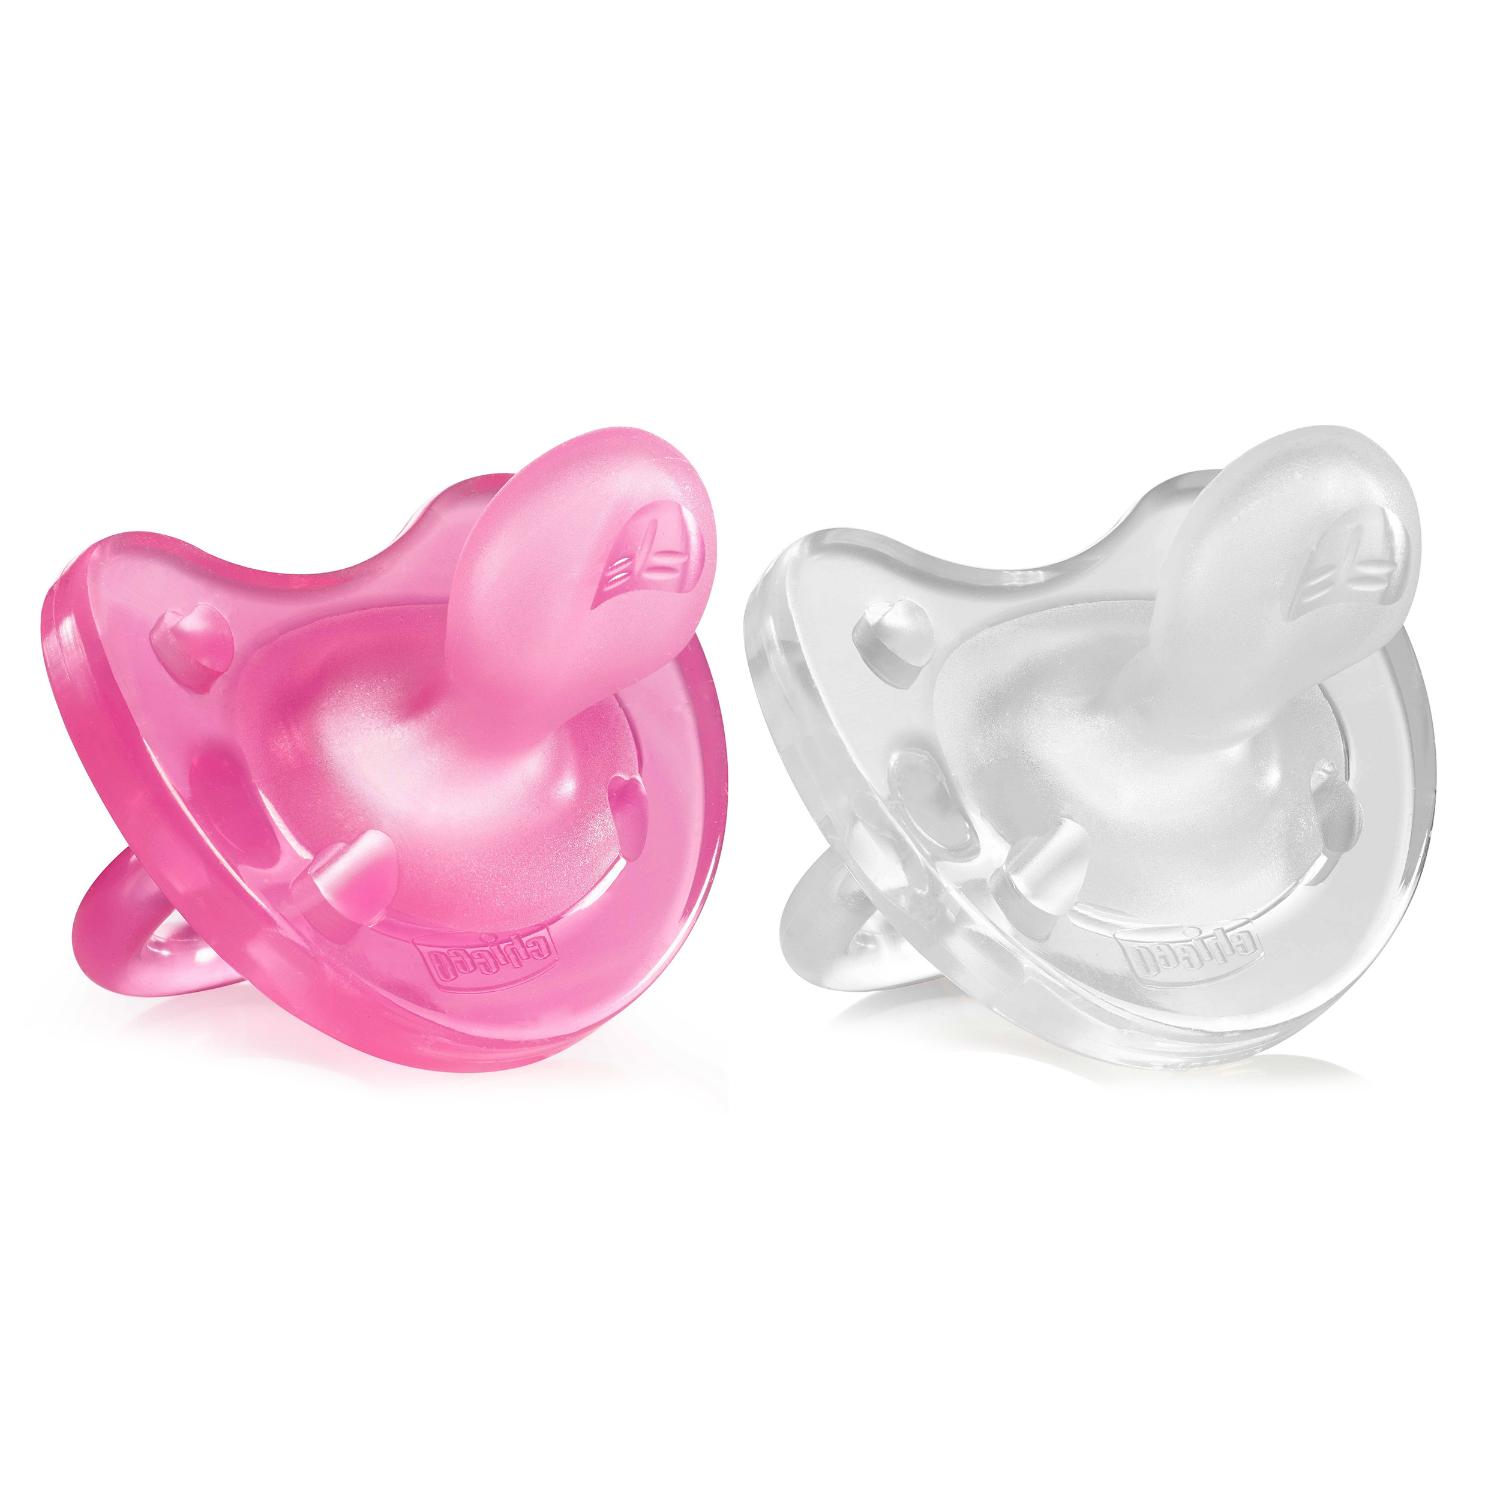 Пустышка силиконовая Physio Soft для девочки с 0 до 6 месяцев - 2 шт (прозрачная, розовая)